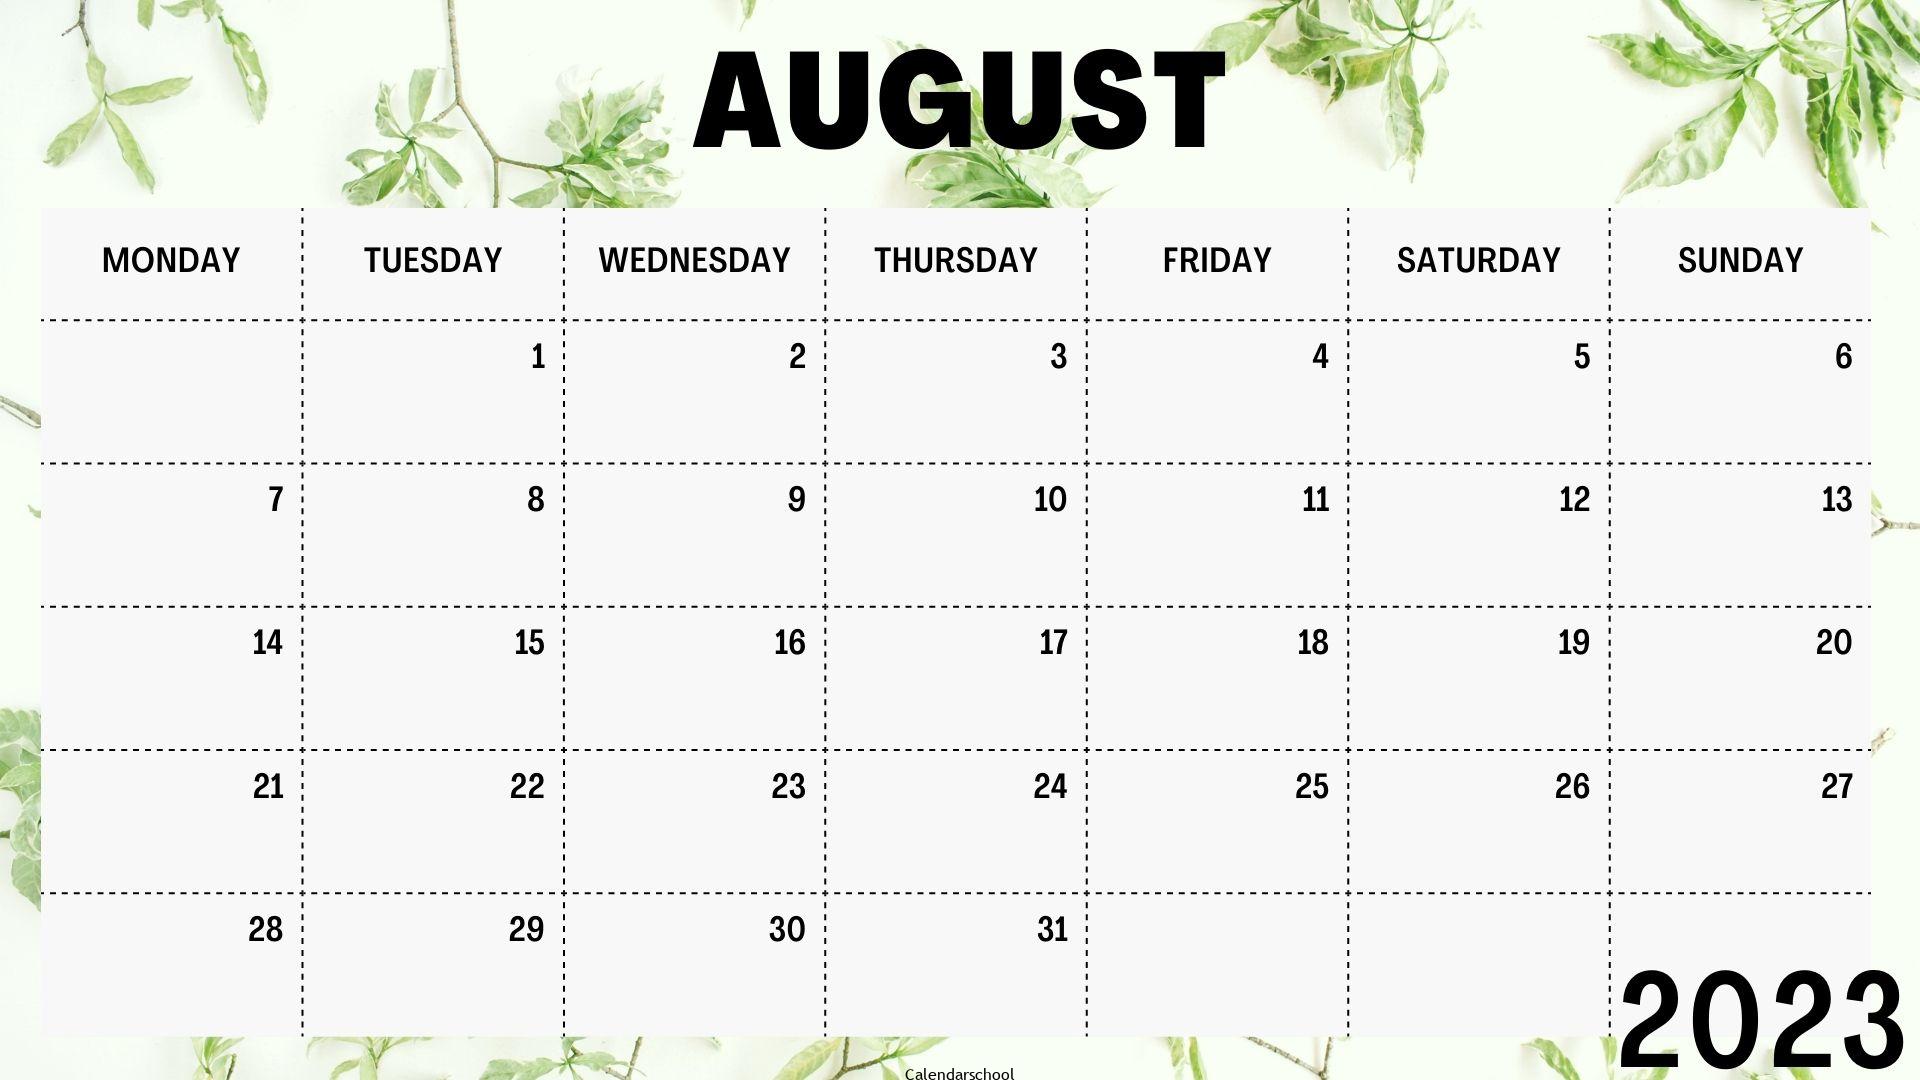 August 2023 Calendar Template